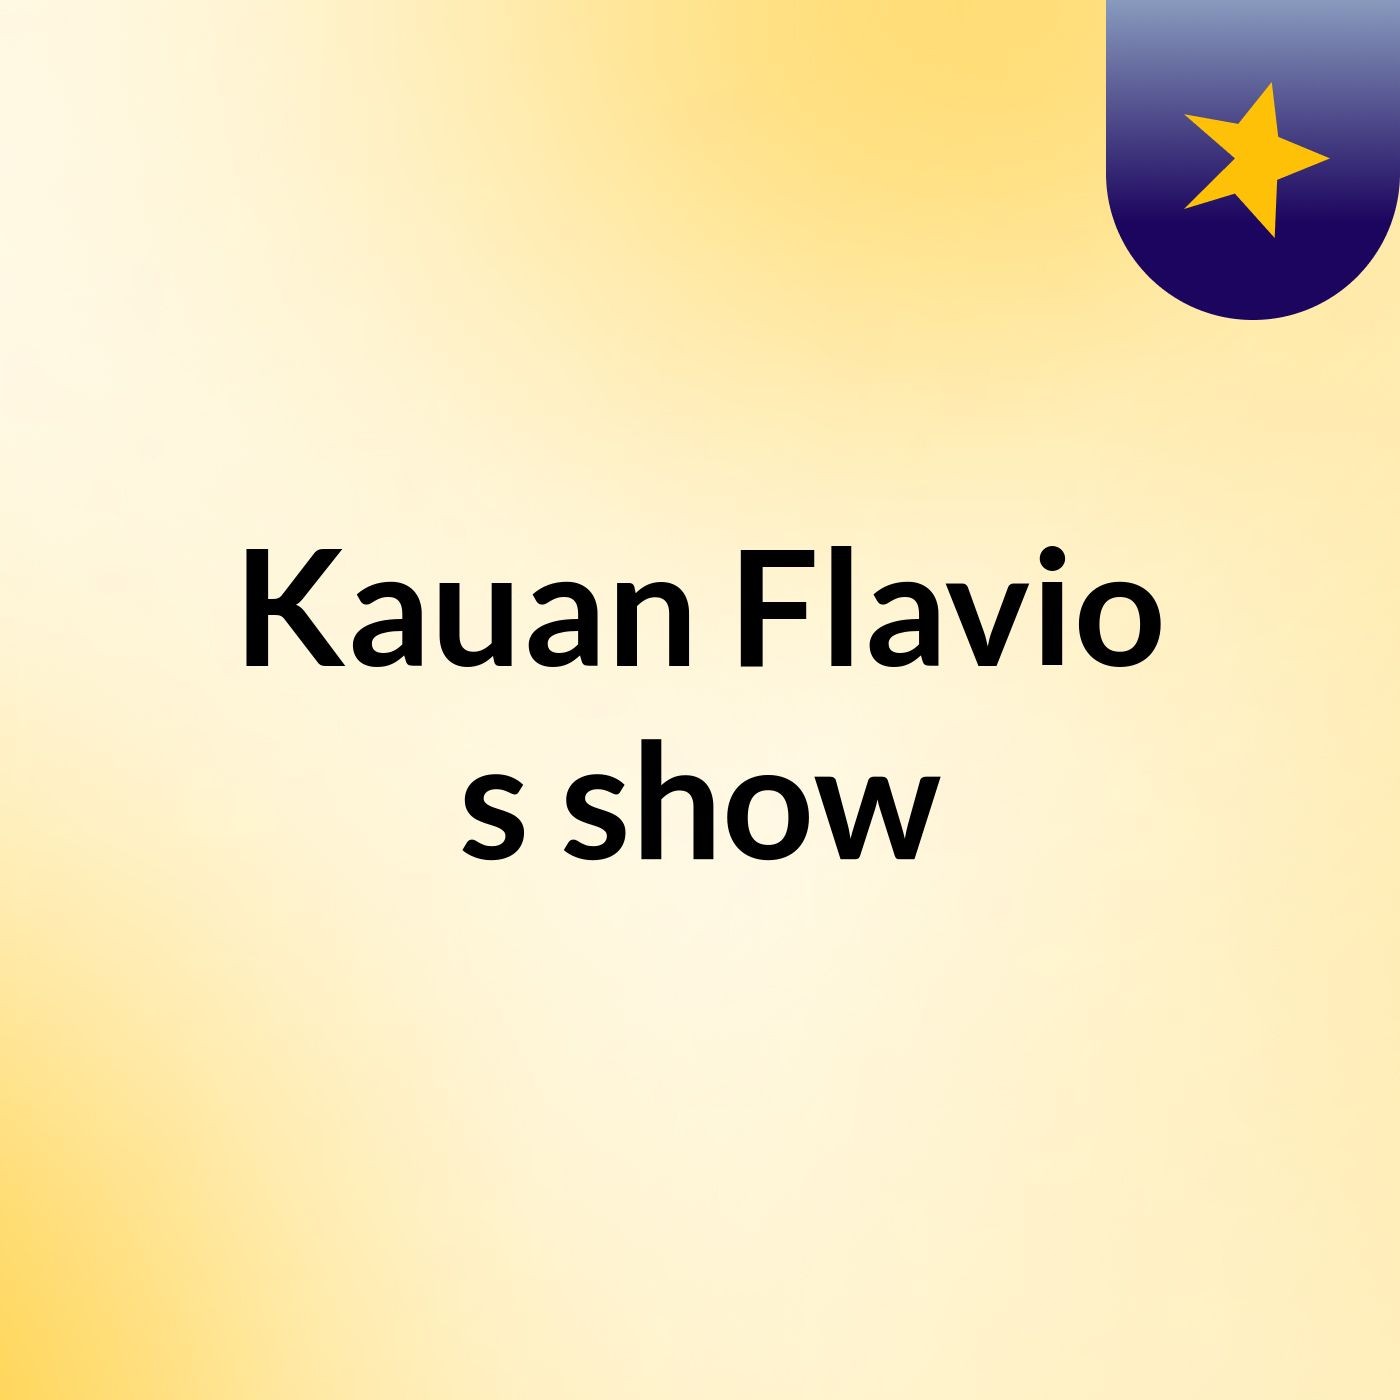 Kauan Flavio's show